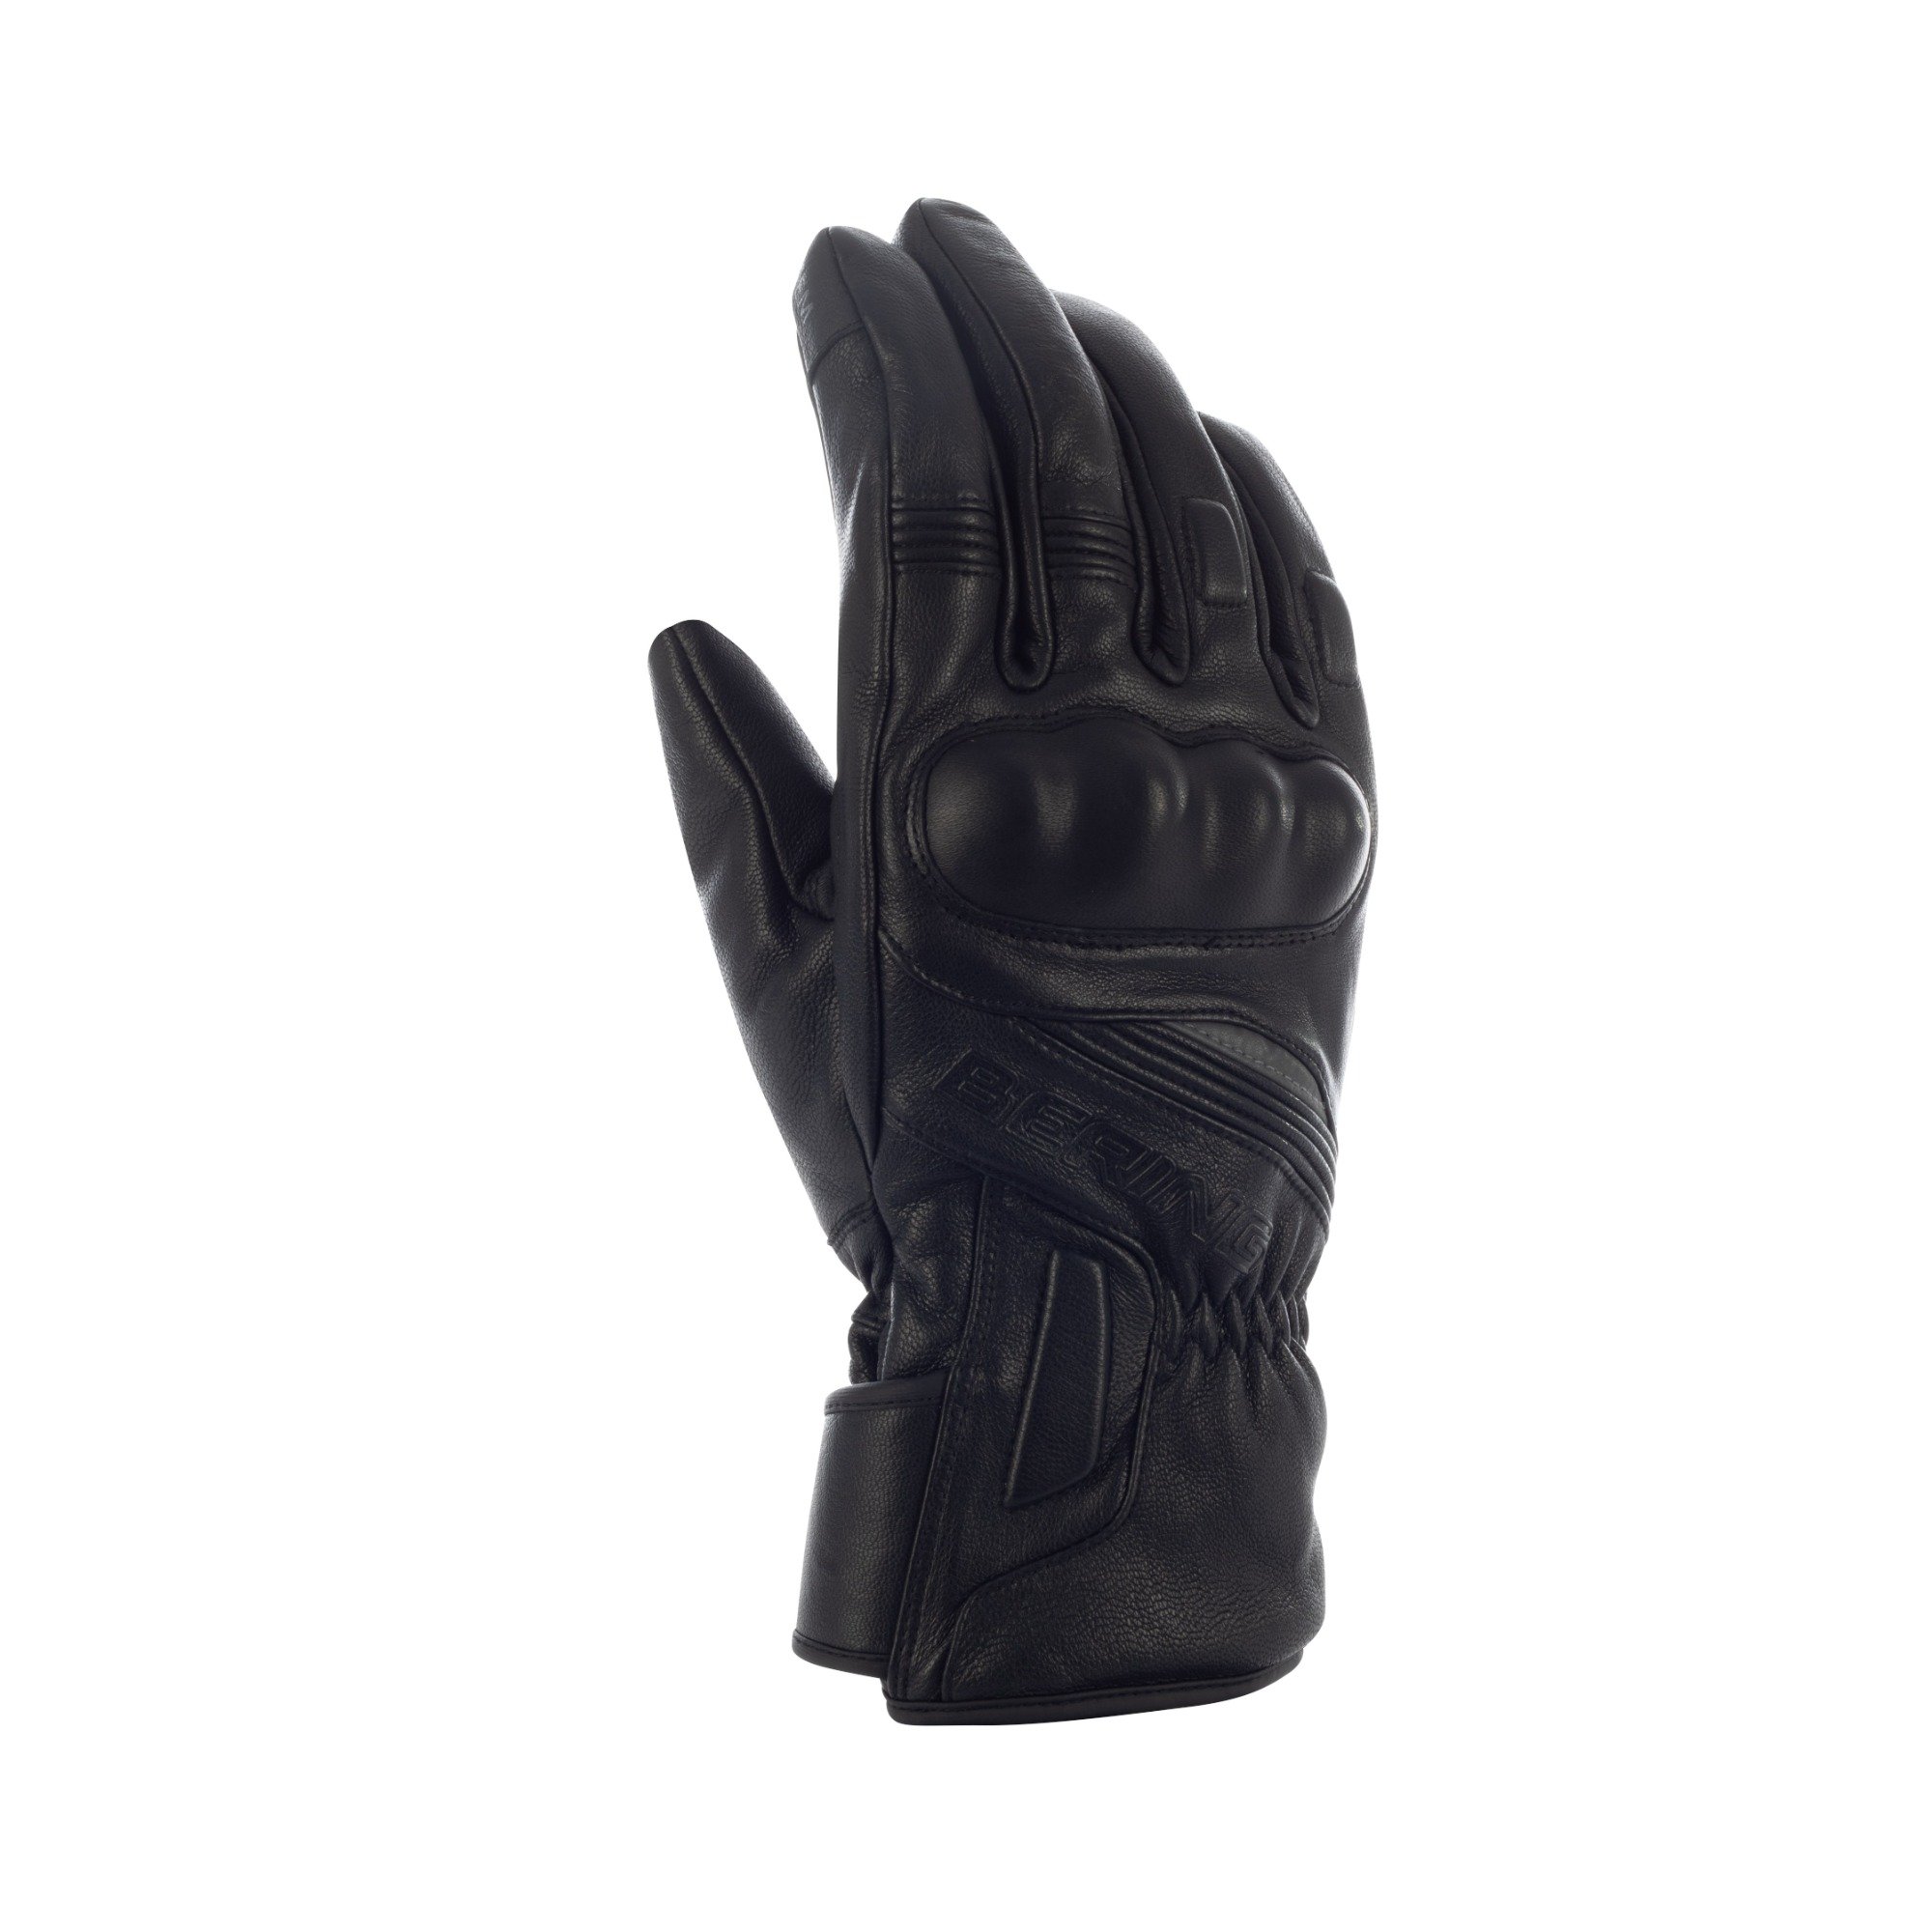 Image of Bering Stryker Gloves Black Size T11 EN